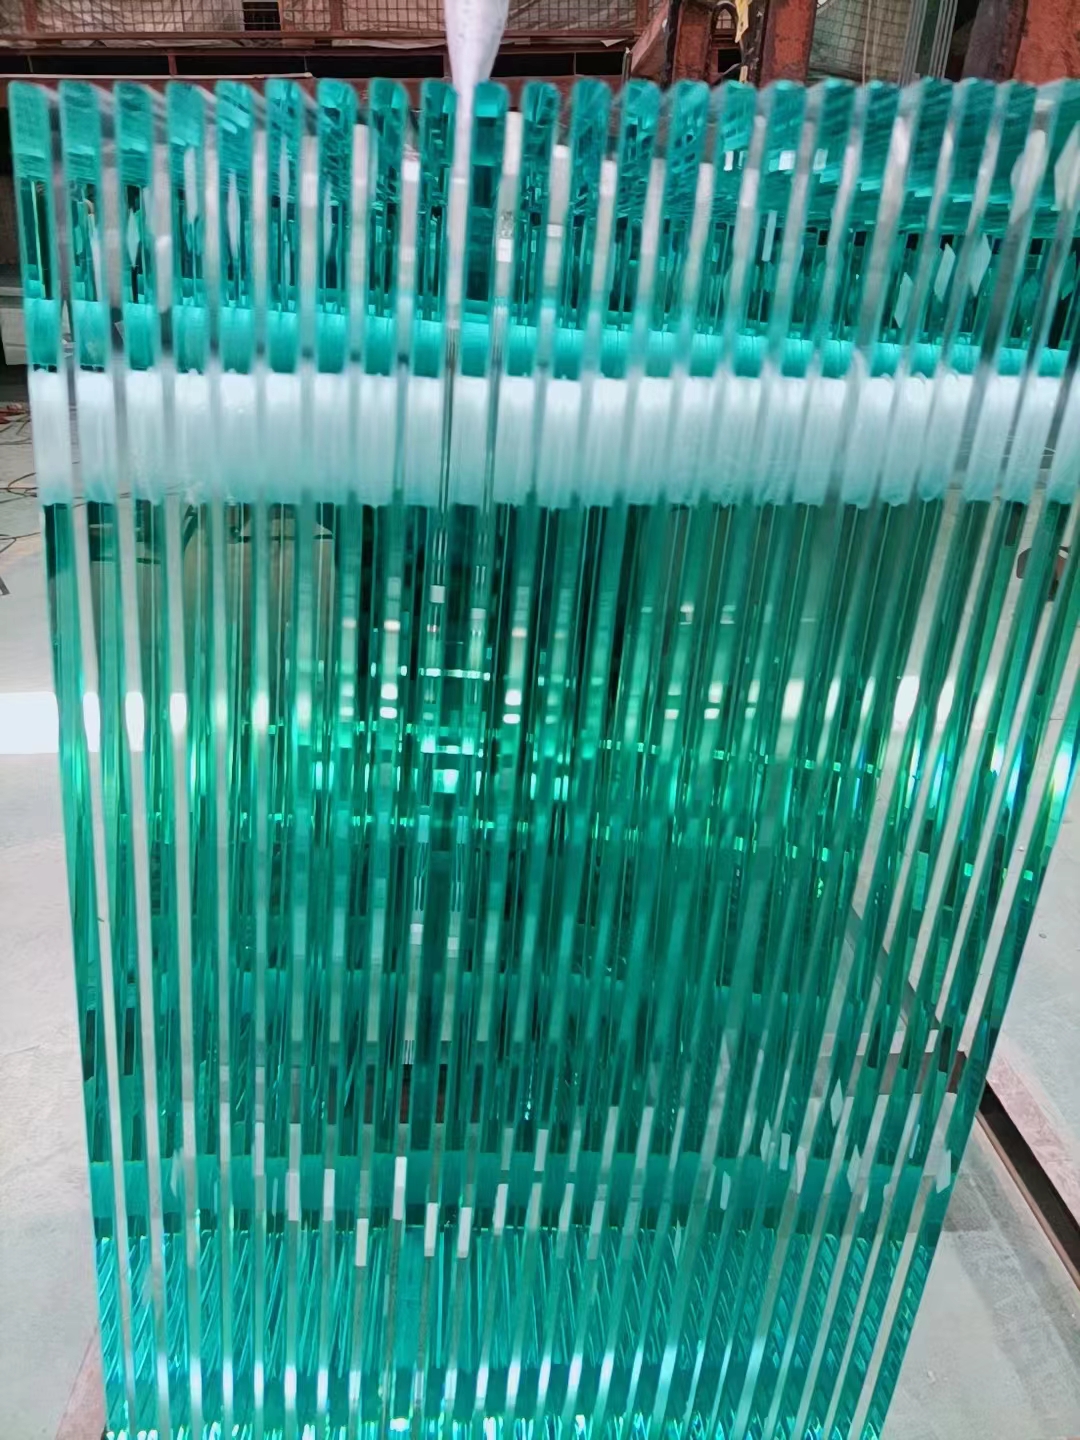 惠州智能卫浴钢化玻璃生产厂家_惠州卫浴钢化玻璃代理_佛山市盛通华鑫玻璃有限公司